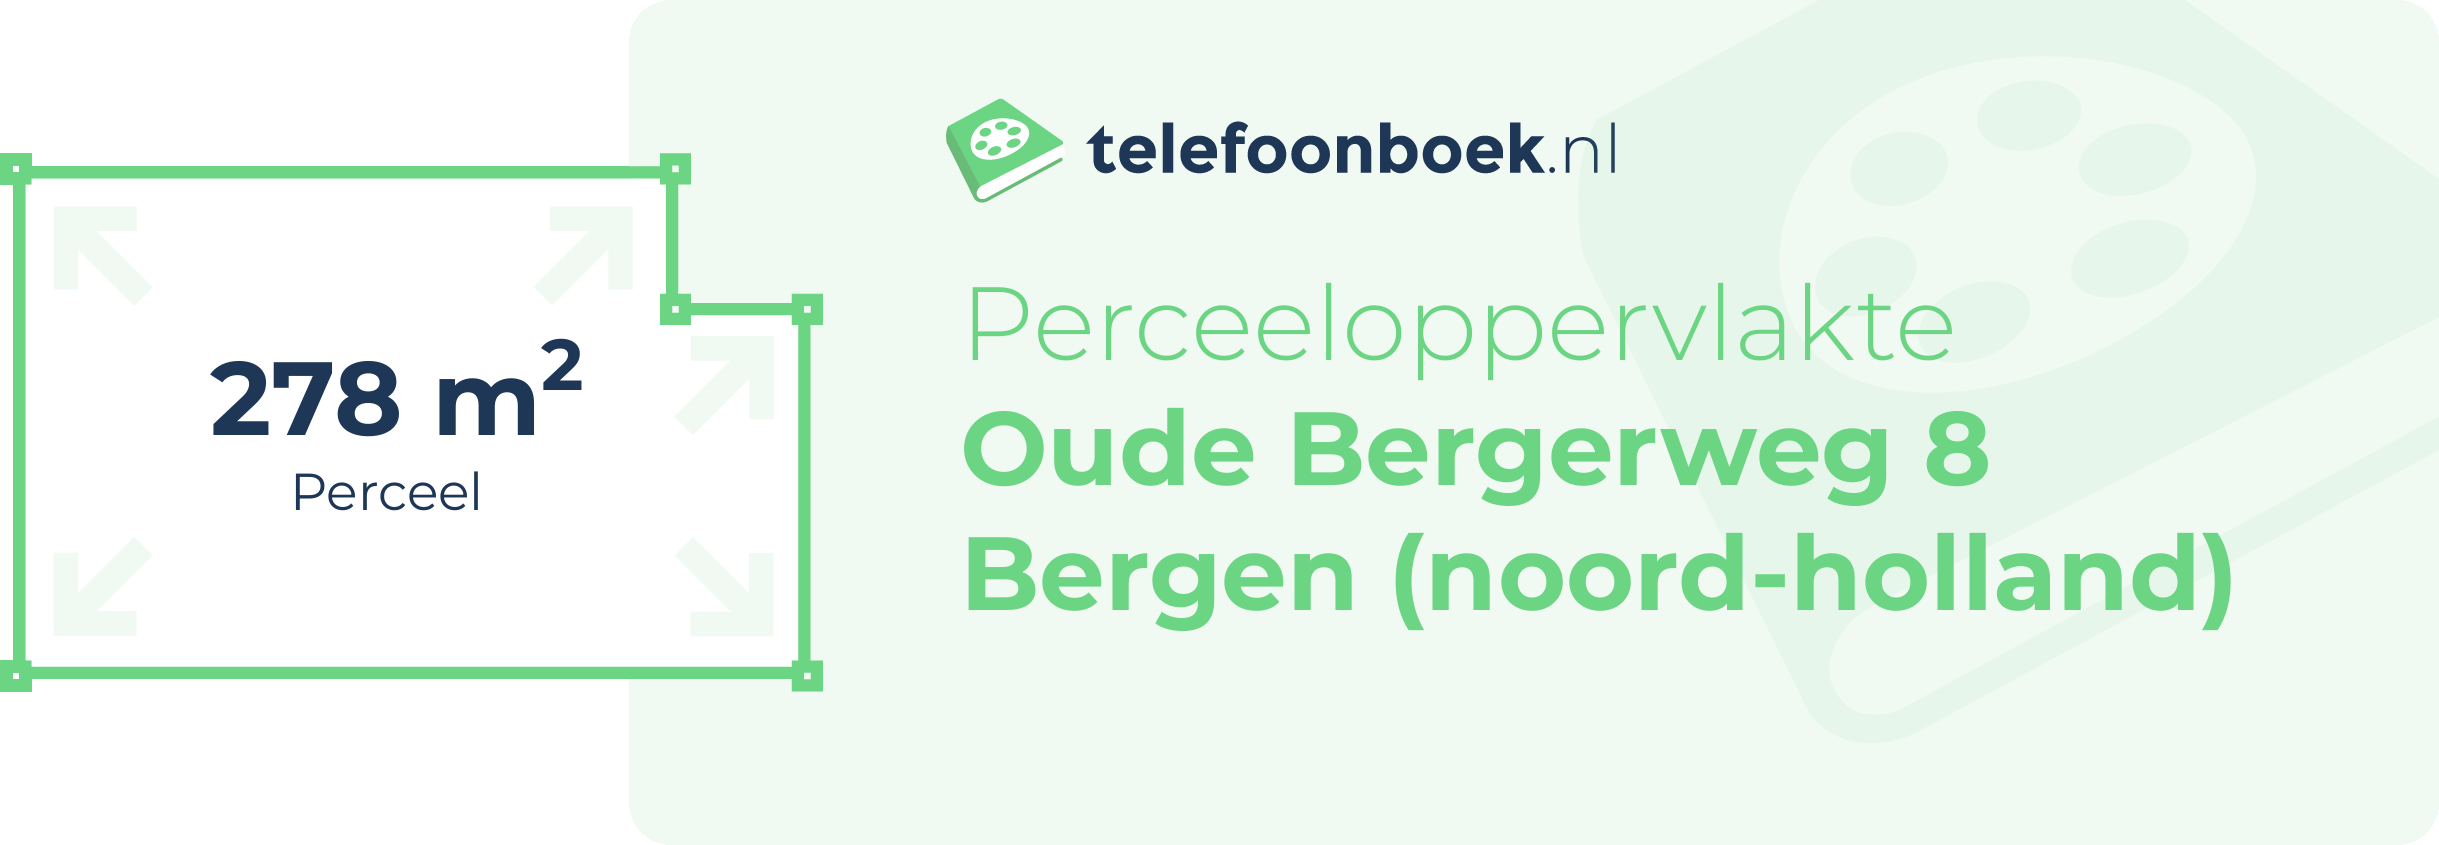 Perceeloppervlakte Oude Bergerweg 8 Bergen (Noord-Holland)